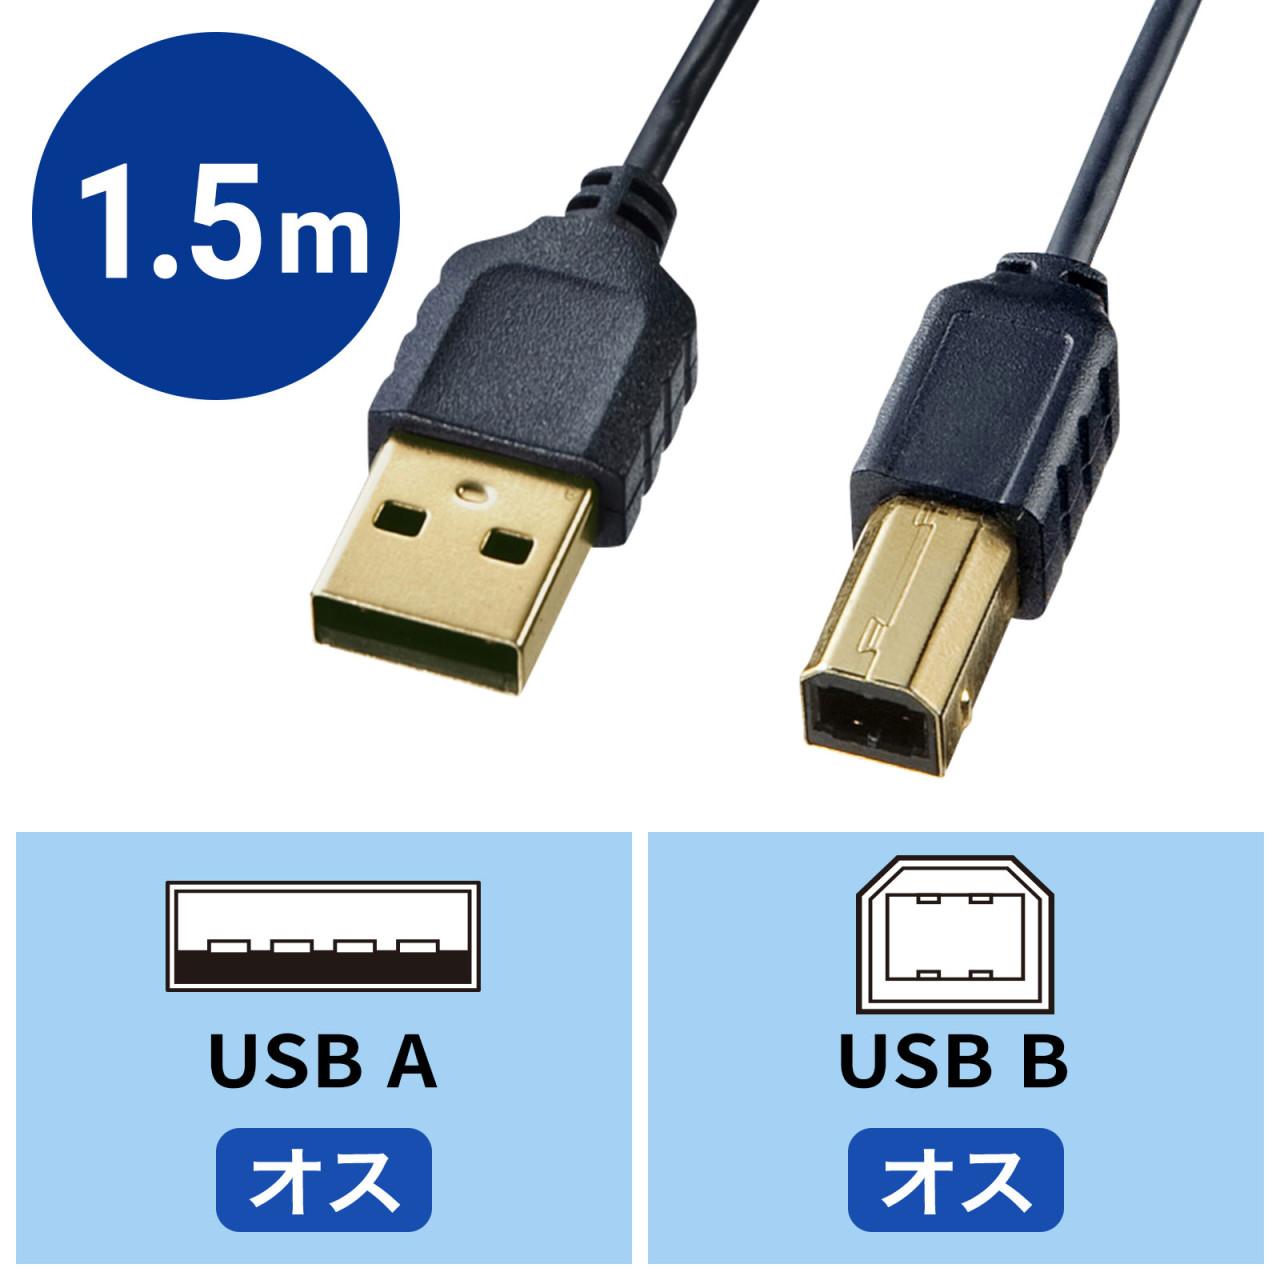 USBケーブル 5m USB2.0 ブラック ハイスピード スタンダード USB A